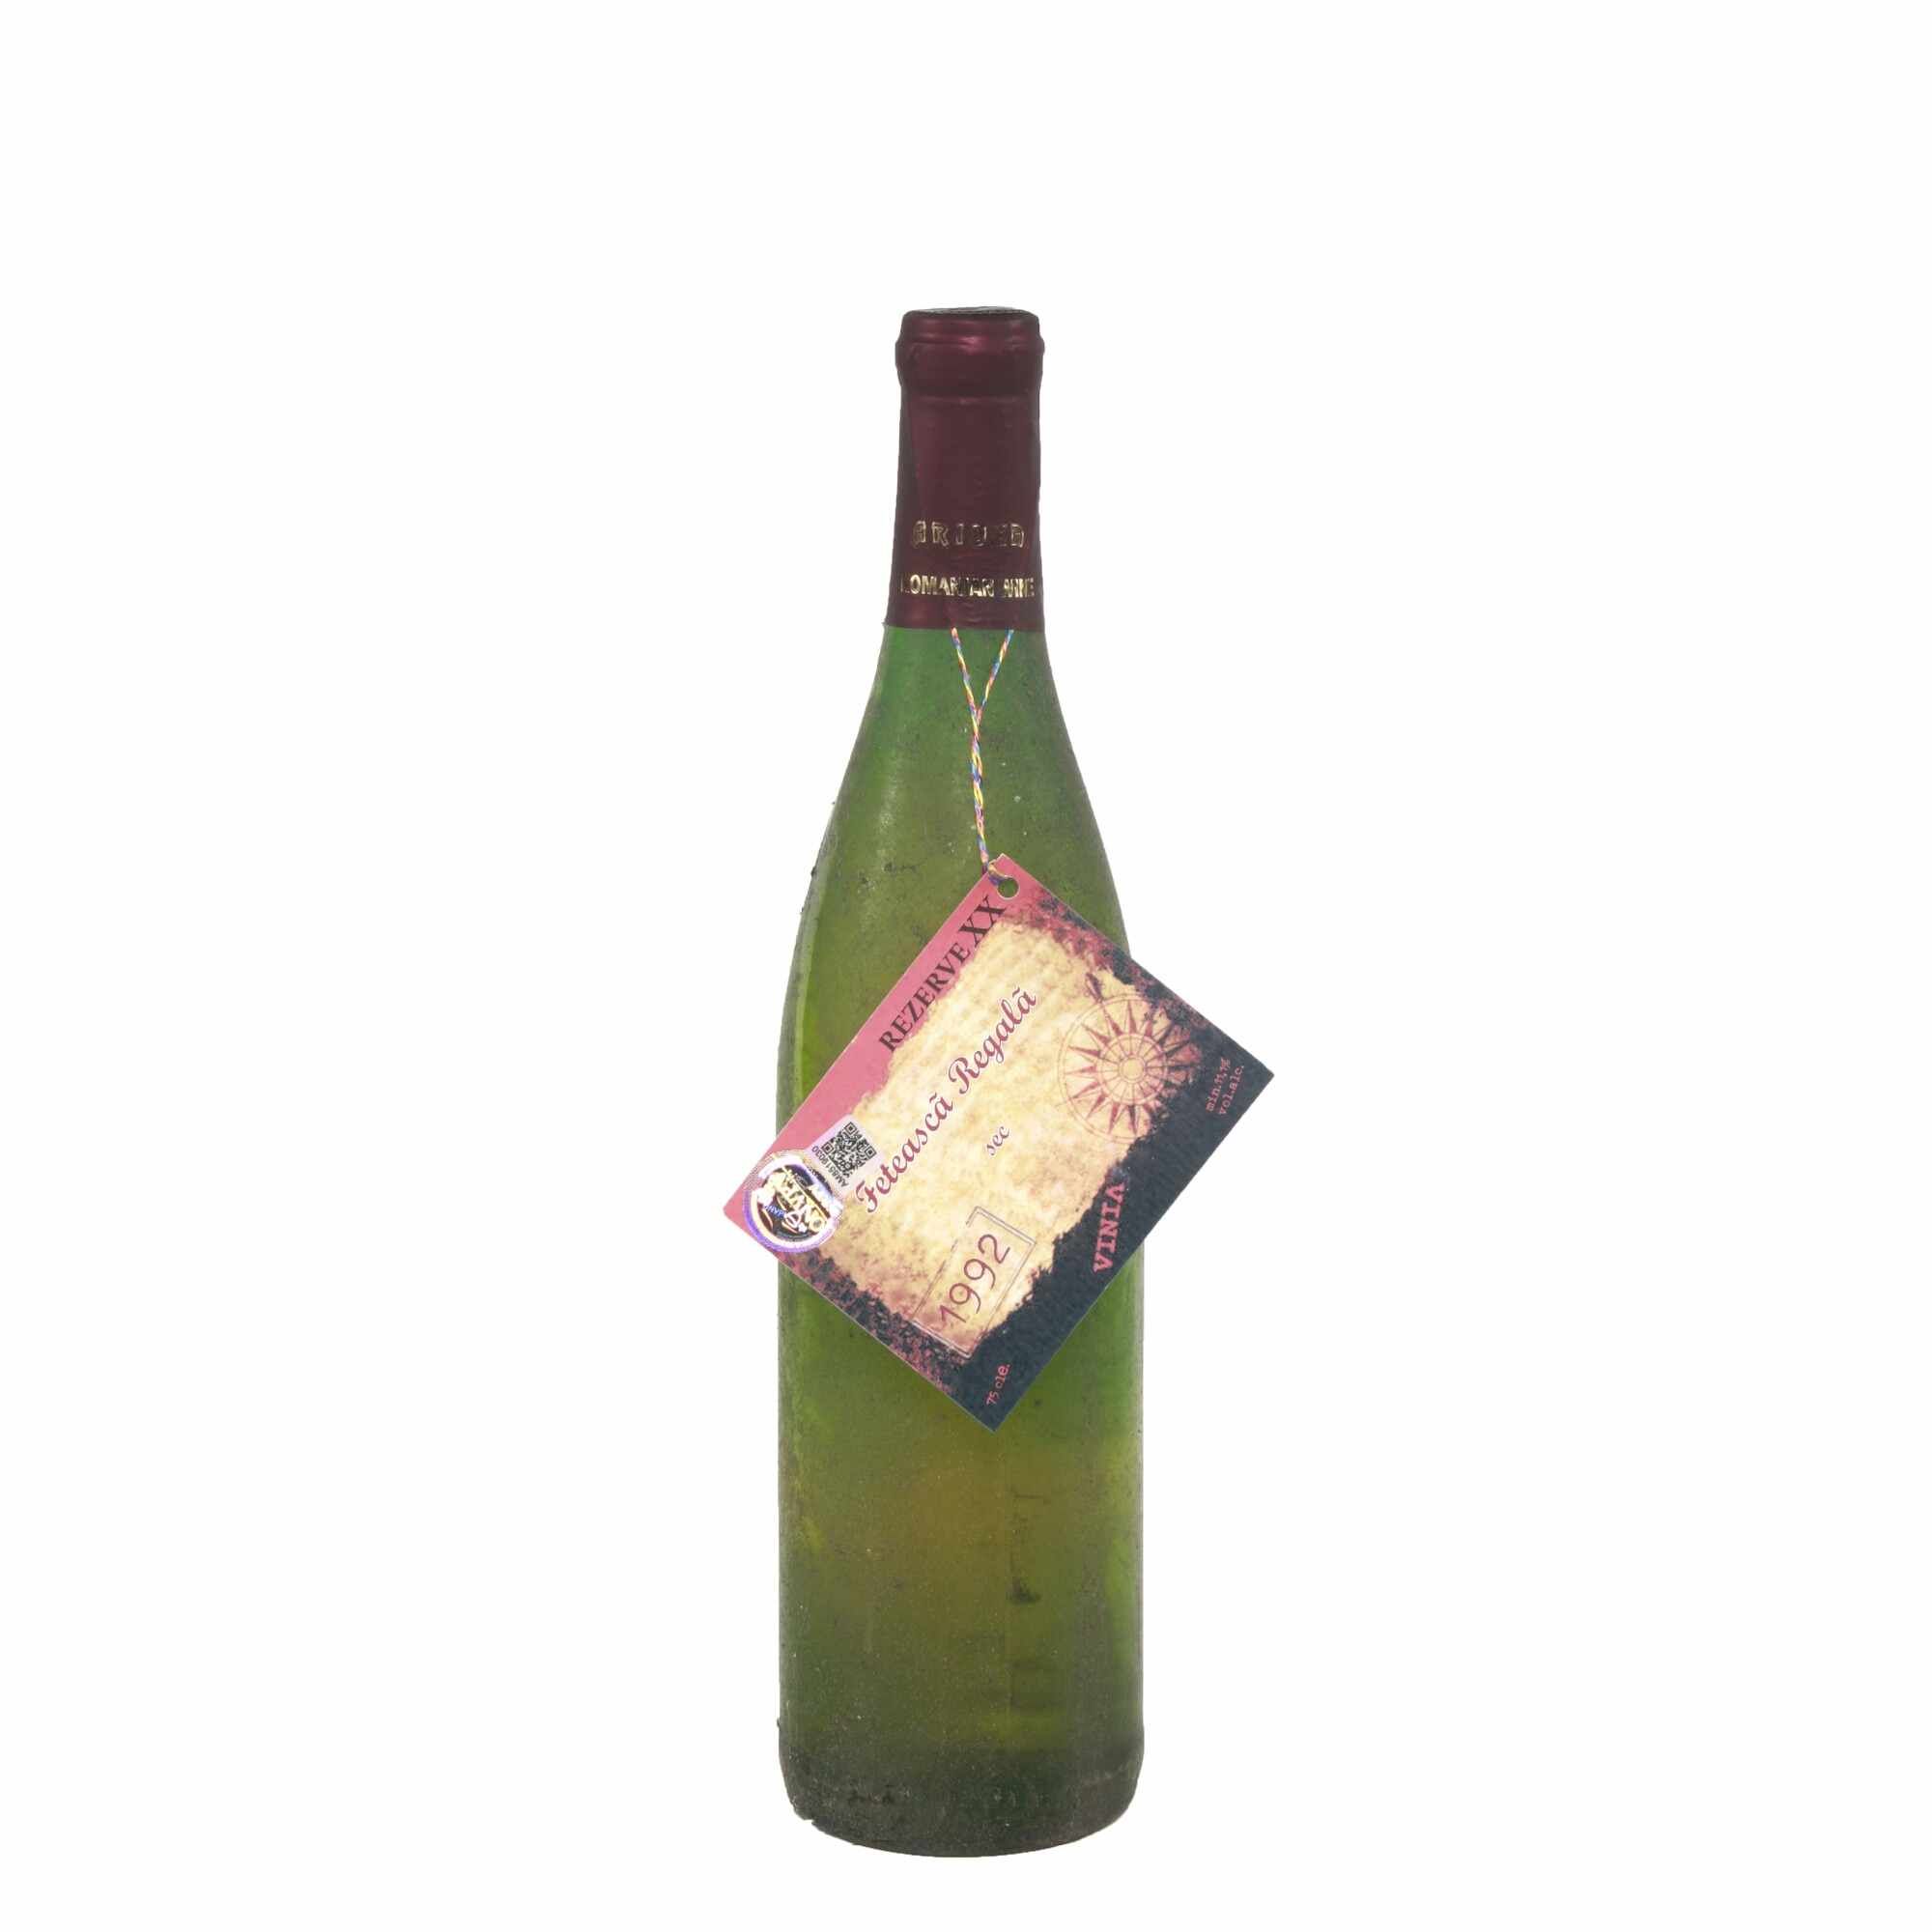 Vin alb, Feteasca Regala, Podgoria Iasi, 1992, sec, Vinia, 0.75 l